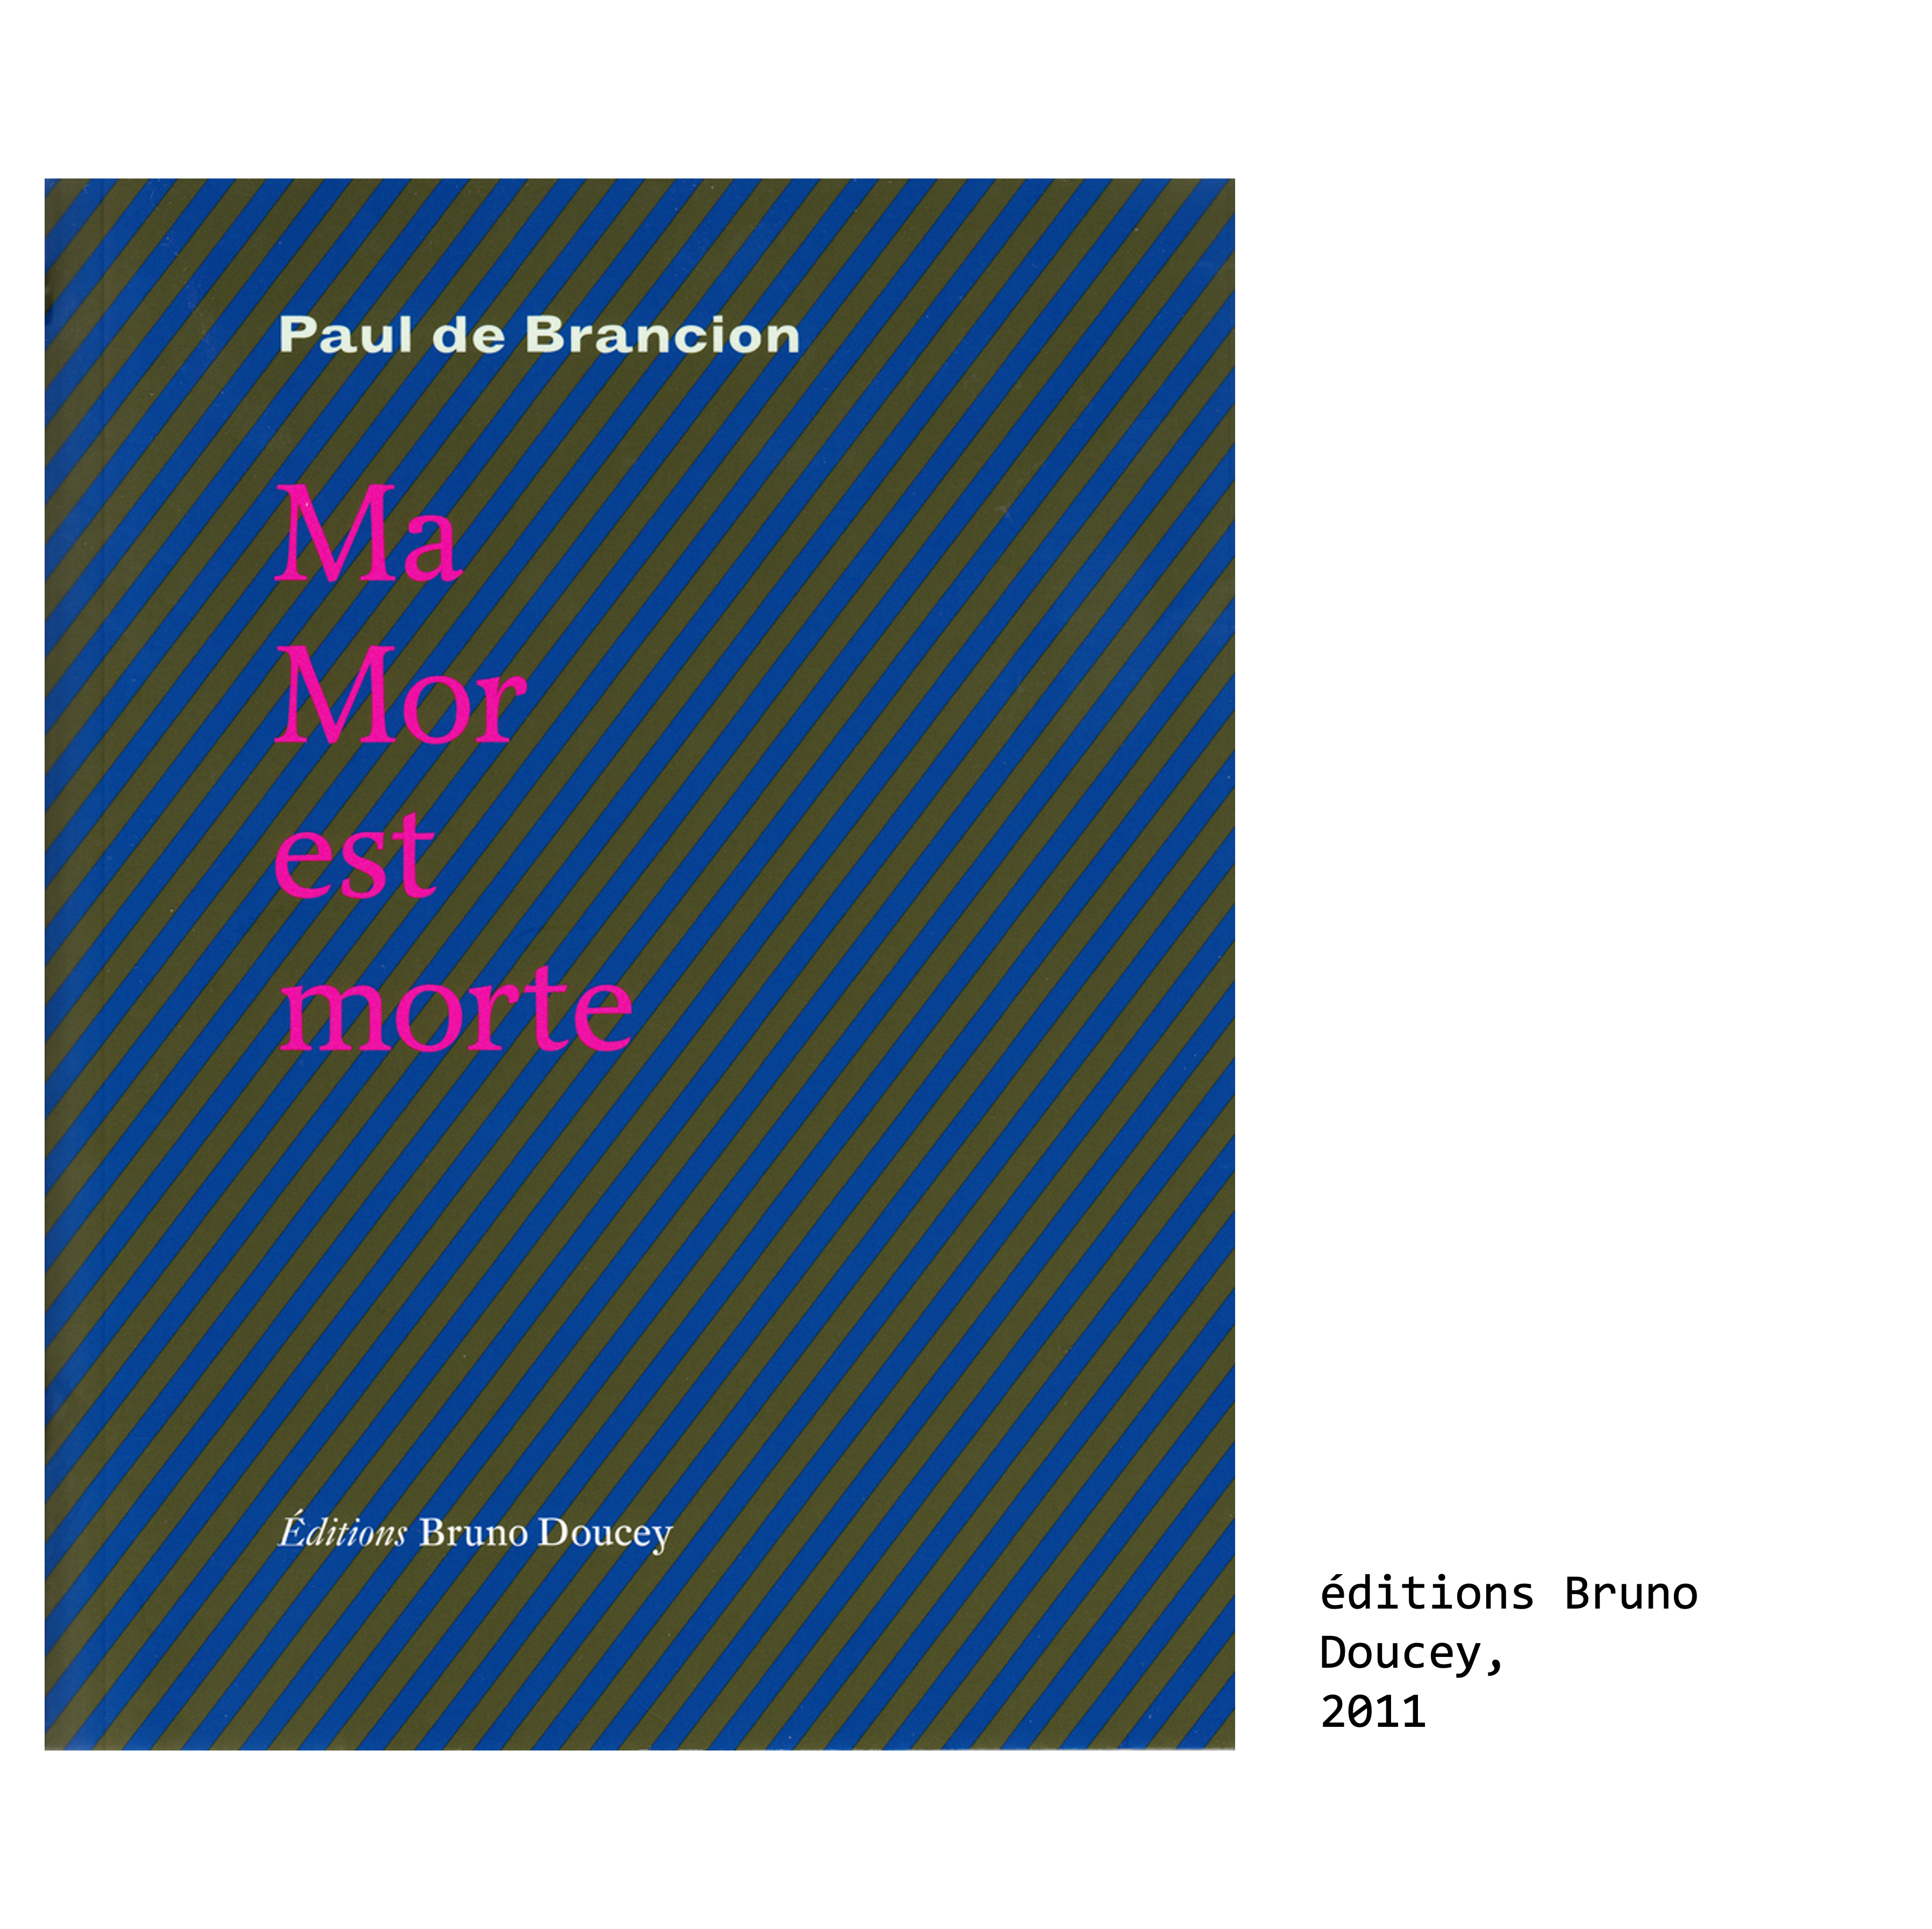 Couverture du livre de Paul de Brancion, écrivain et poète : Ma Mor est morte (poèmes en prose), éditions Bruno Doucey, 2011